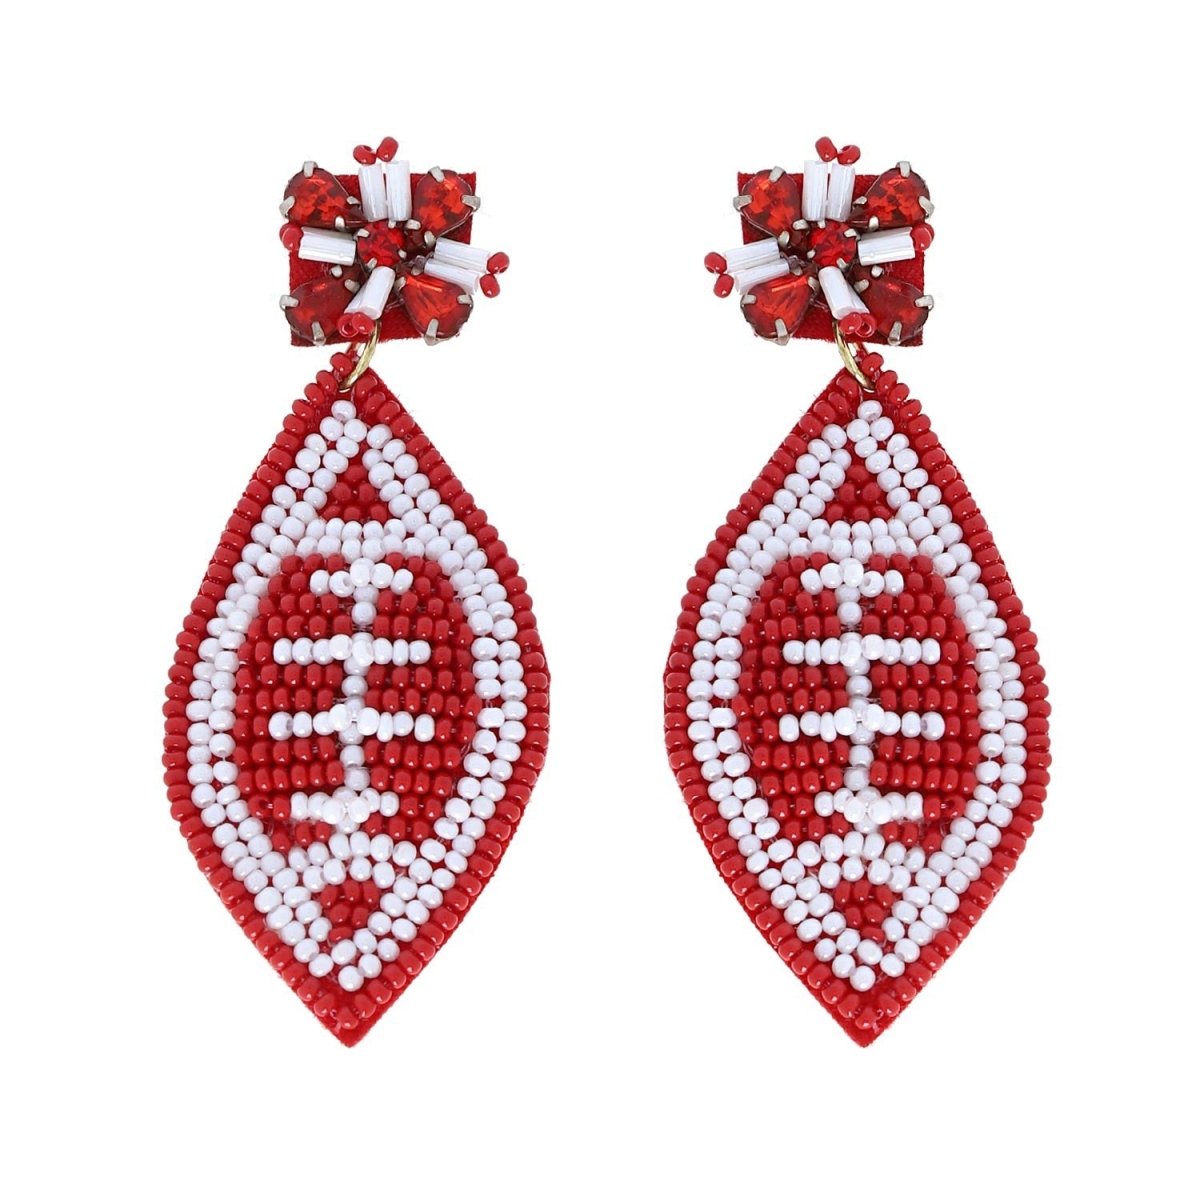 2-Tier Jeweled Beaded Football Earrings - earrings - Jimberly's Boutique